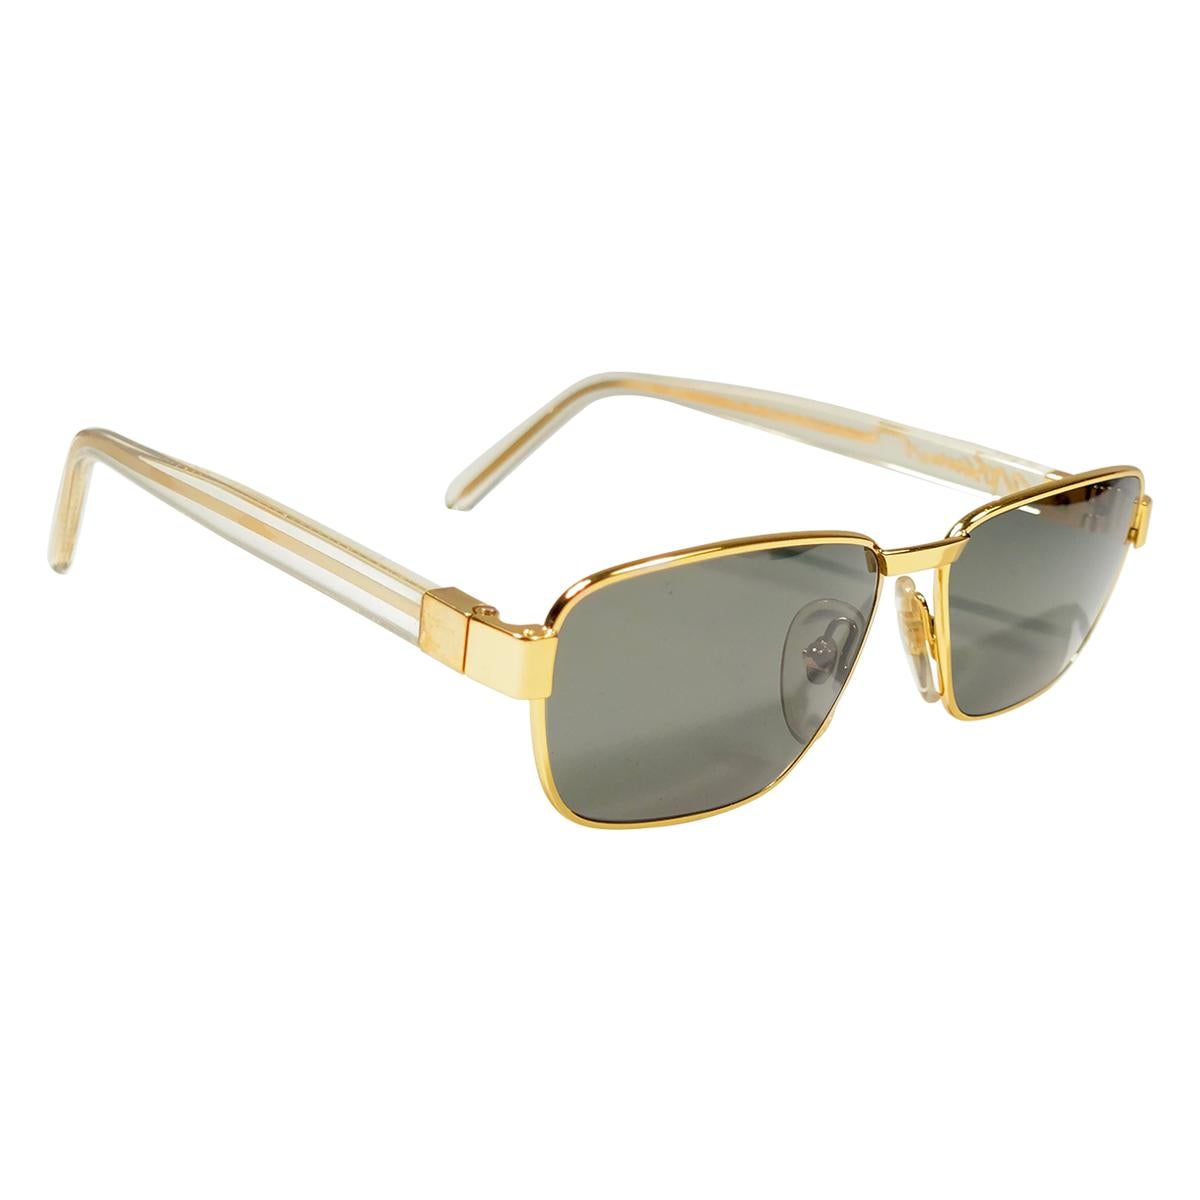 Neu Vintage Moschino von Persol MM33 Rahmen Medium Rechteckige Gold-Sonnenbrille 